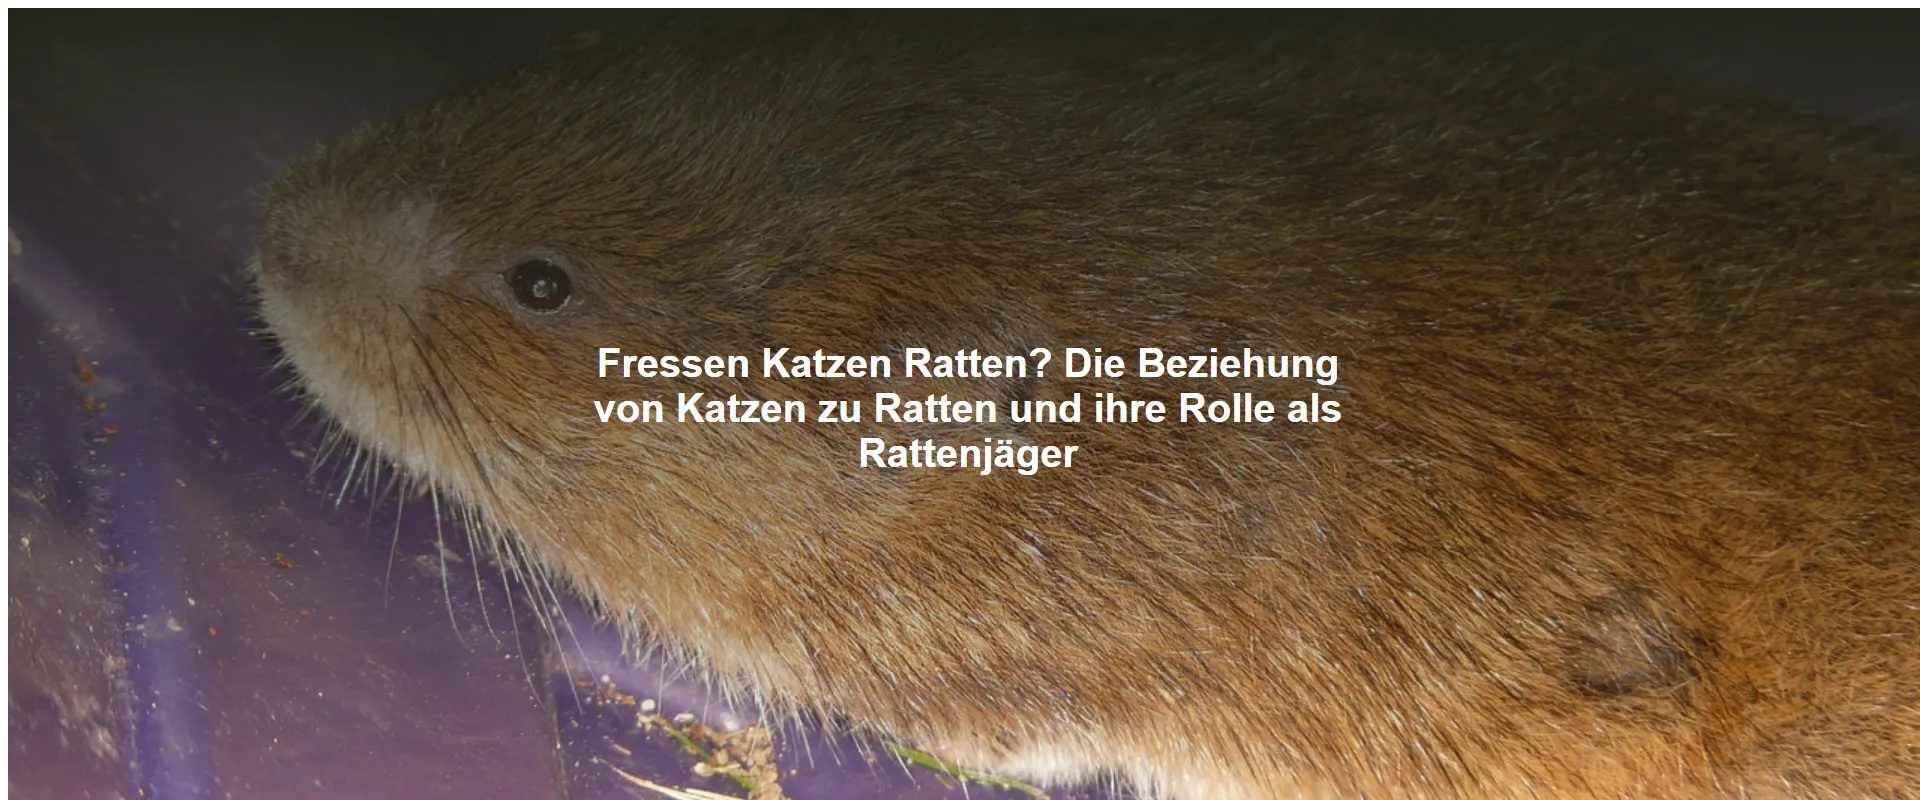 Fressen Katzen Ratten? Die Beziehung von Katzen zu Ratten und ihre Rolle als Rattenjäger